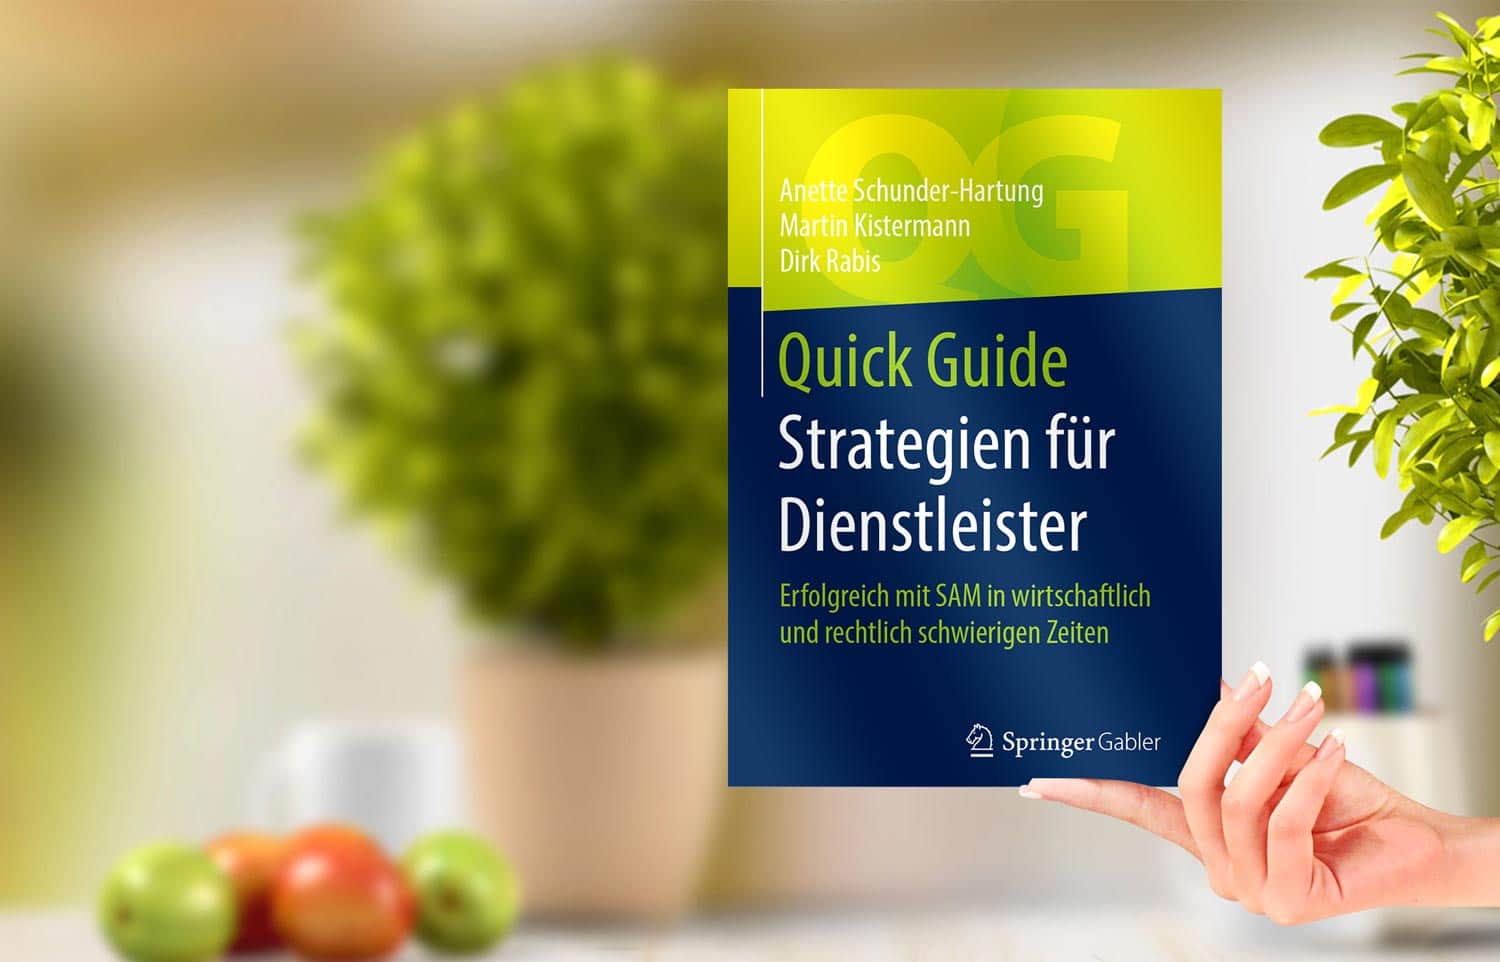 Strategien für Dienstleister. Das Buch. Herausgeber Springer-Verlag. Als eBook und Softcover.